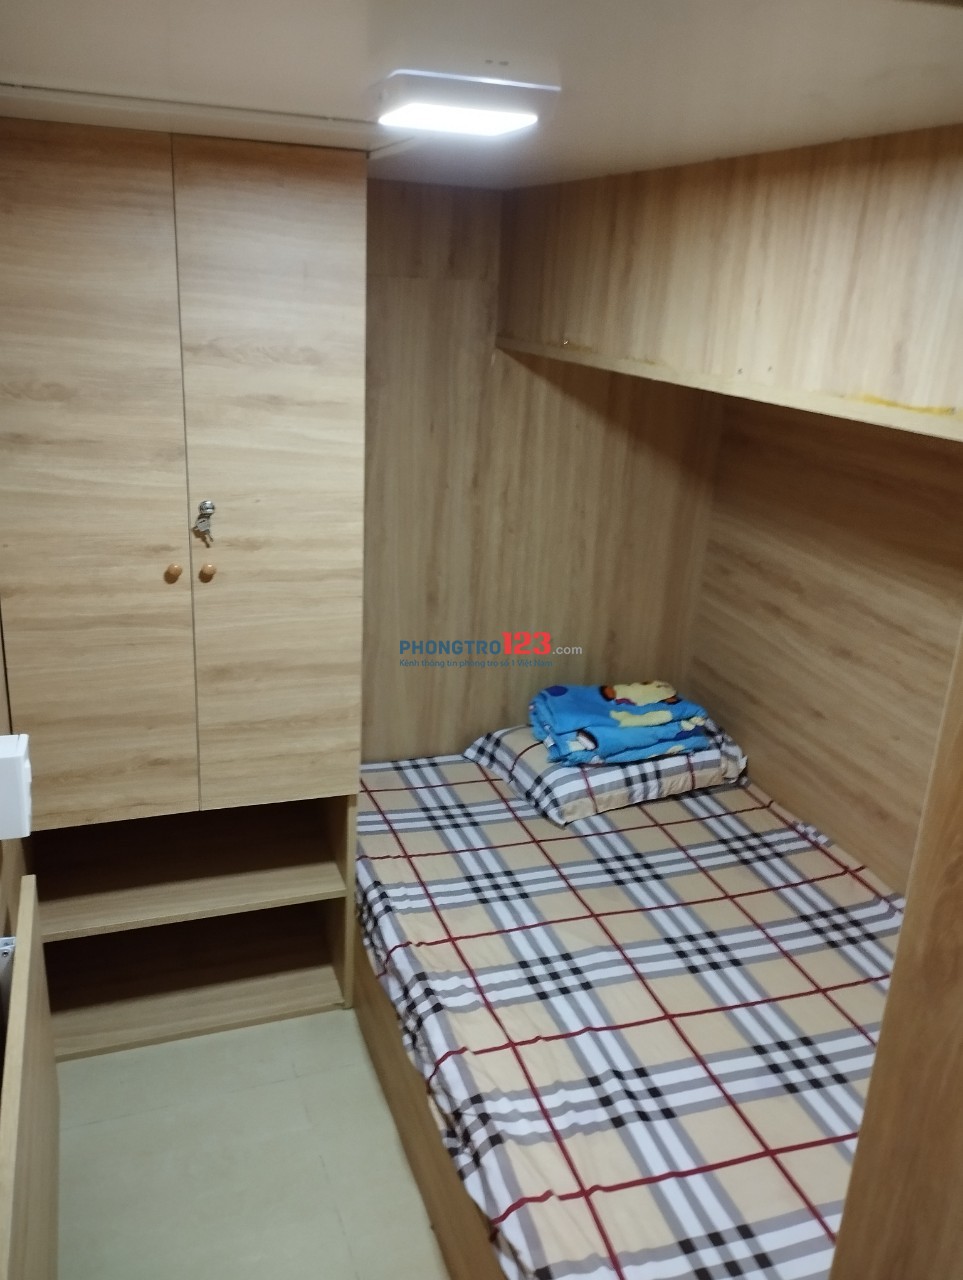 Sleep Box Cao Cấp: Phòng Cho 4 Người - 1.9 triệu/tháng tại Trần Não, TP Thủ Đức